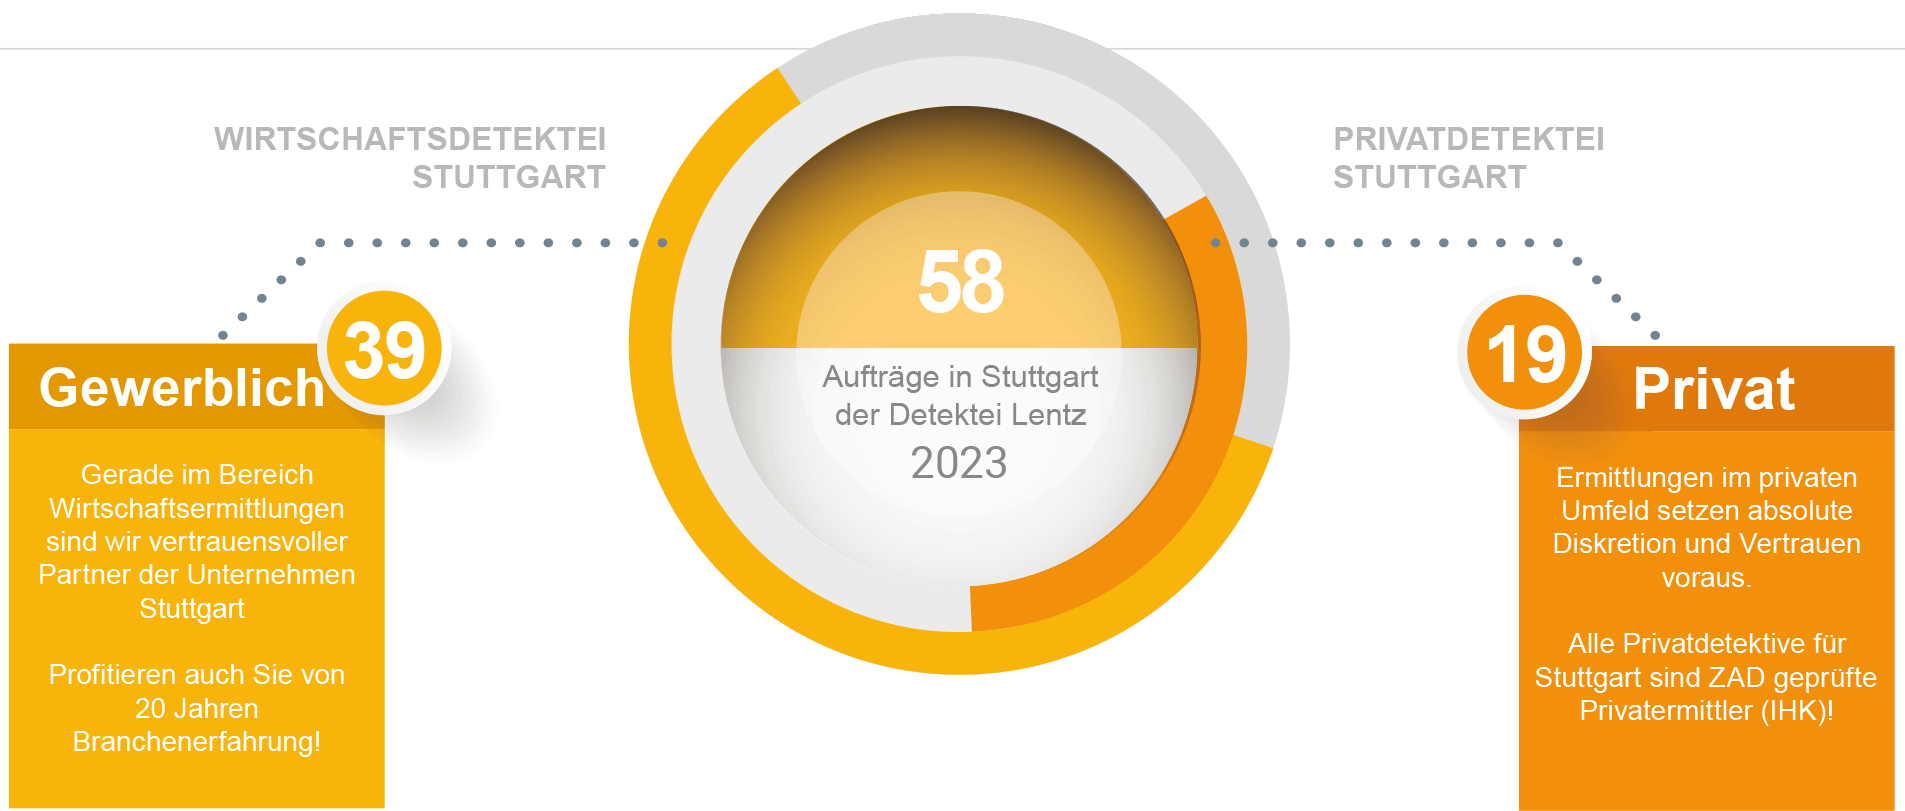 Aufträge für 2023 der Detektei Stuttgart